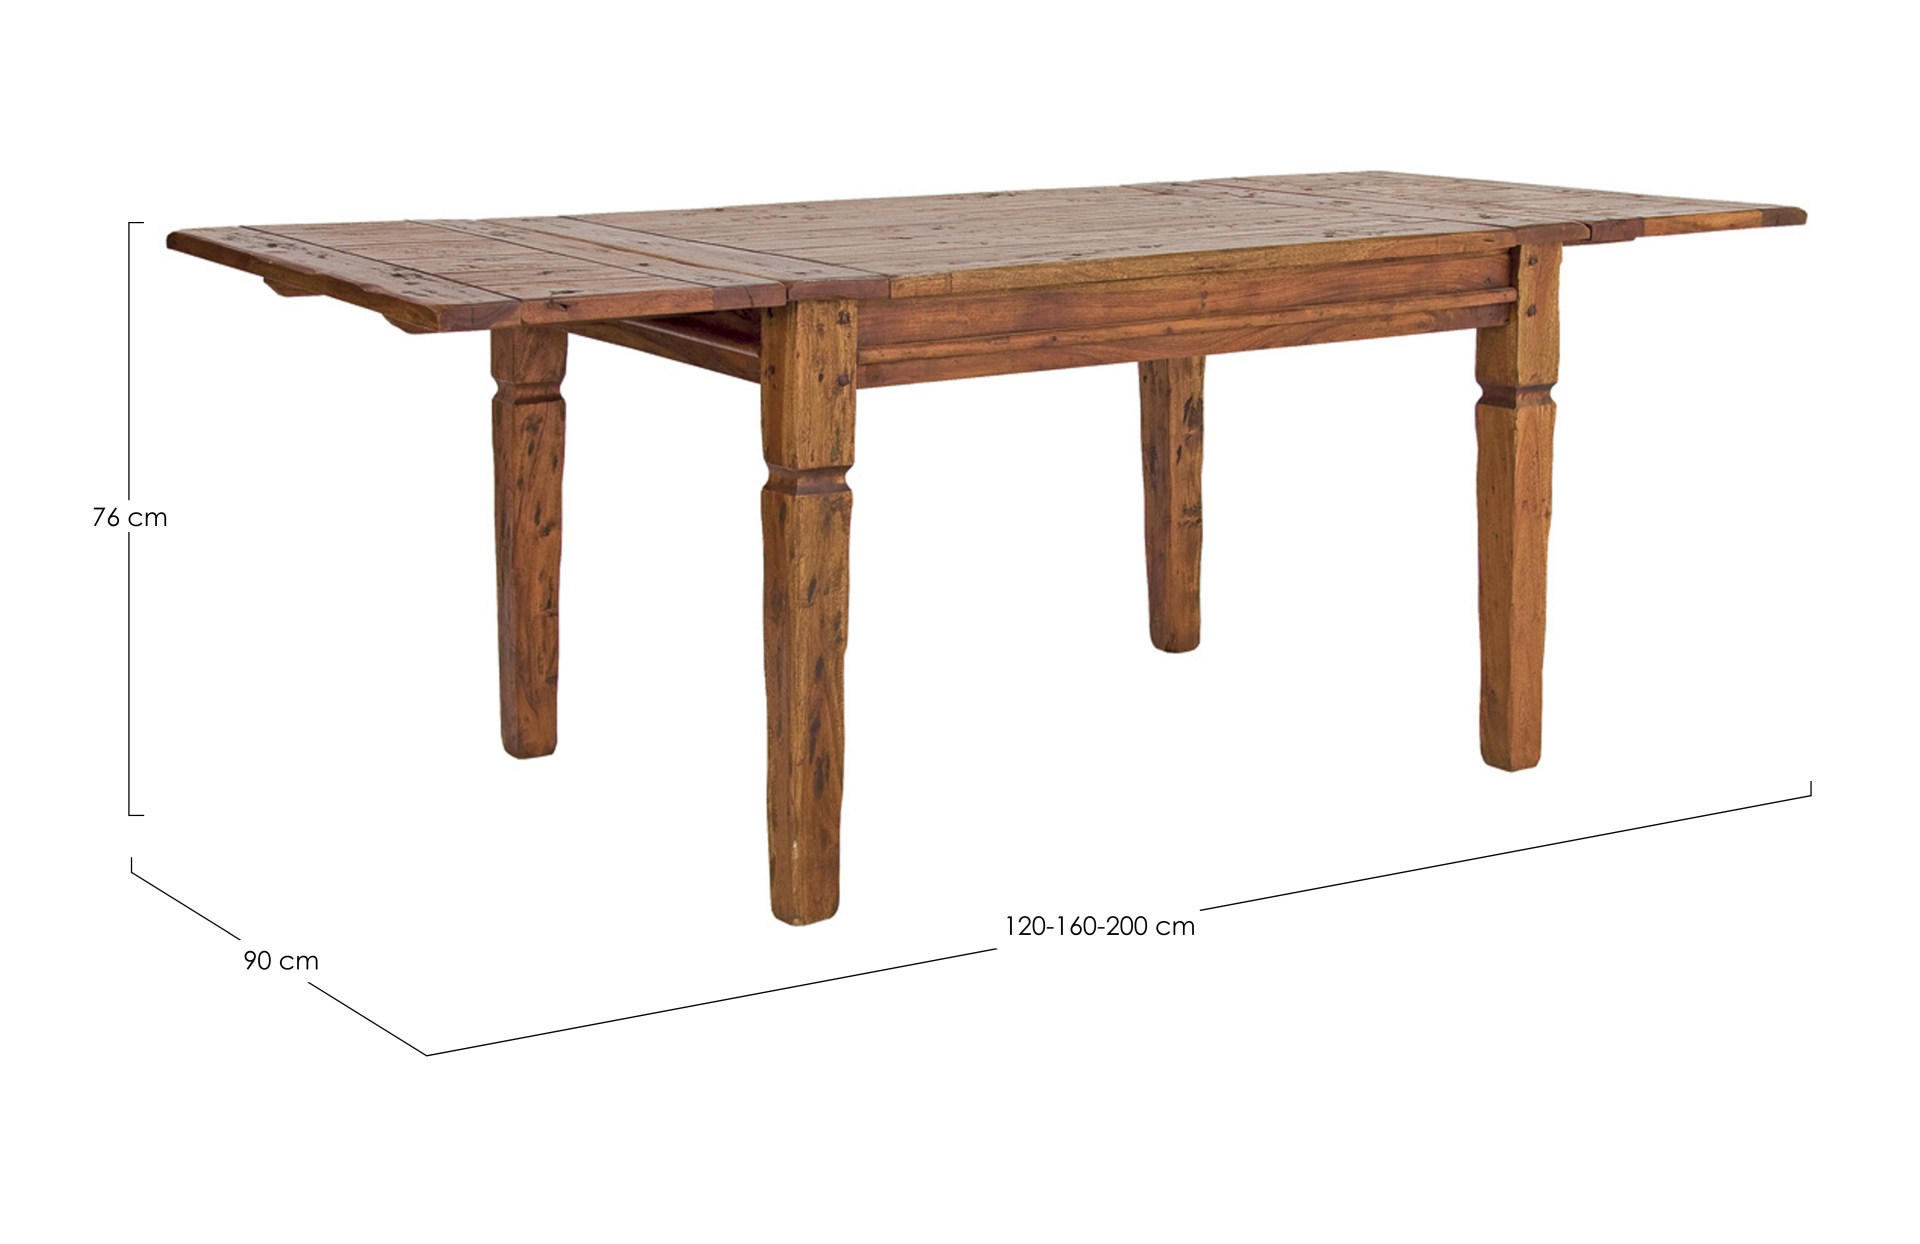 Der Esstisch Chateaux überzeugt mit seinem klassischem Design. Gefertigt wurde er aus Akazienholz, welches einen natürlichen Farbton besitzt. Das Gestell des Tisches ist auch aus Akazienholz. Der Tisch ist ausziehbar von einer Breite von 120 cm auf 200 cm